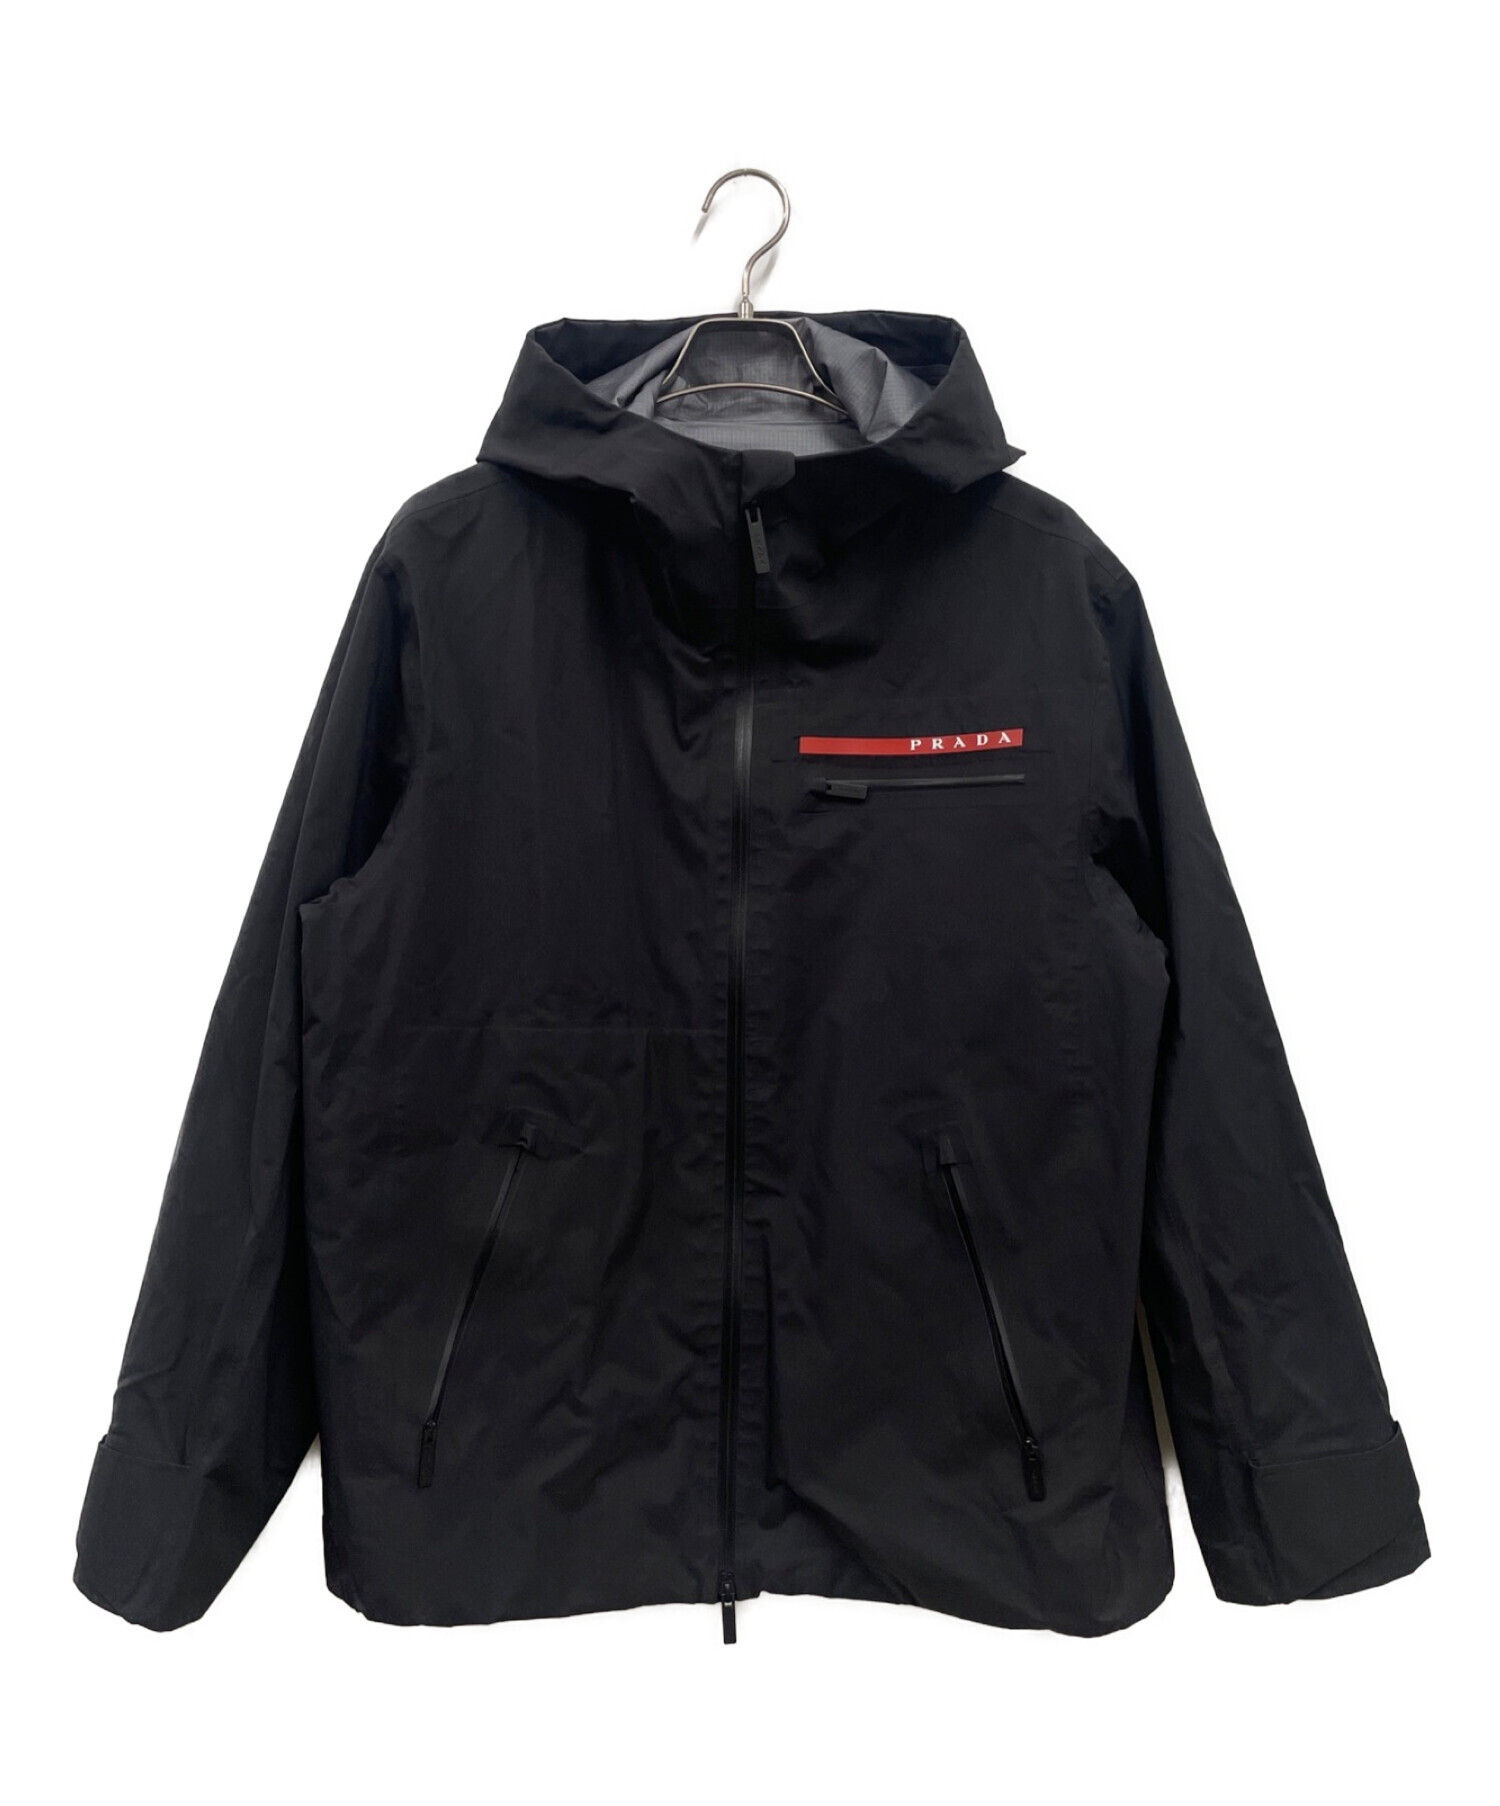 18,950円PRADA SPORT Mountain Parka Jacket